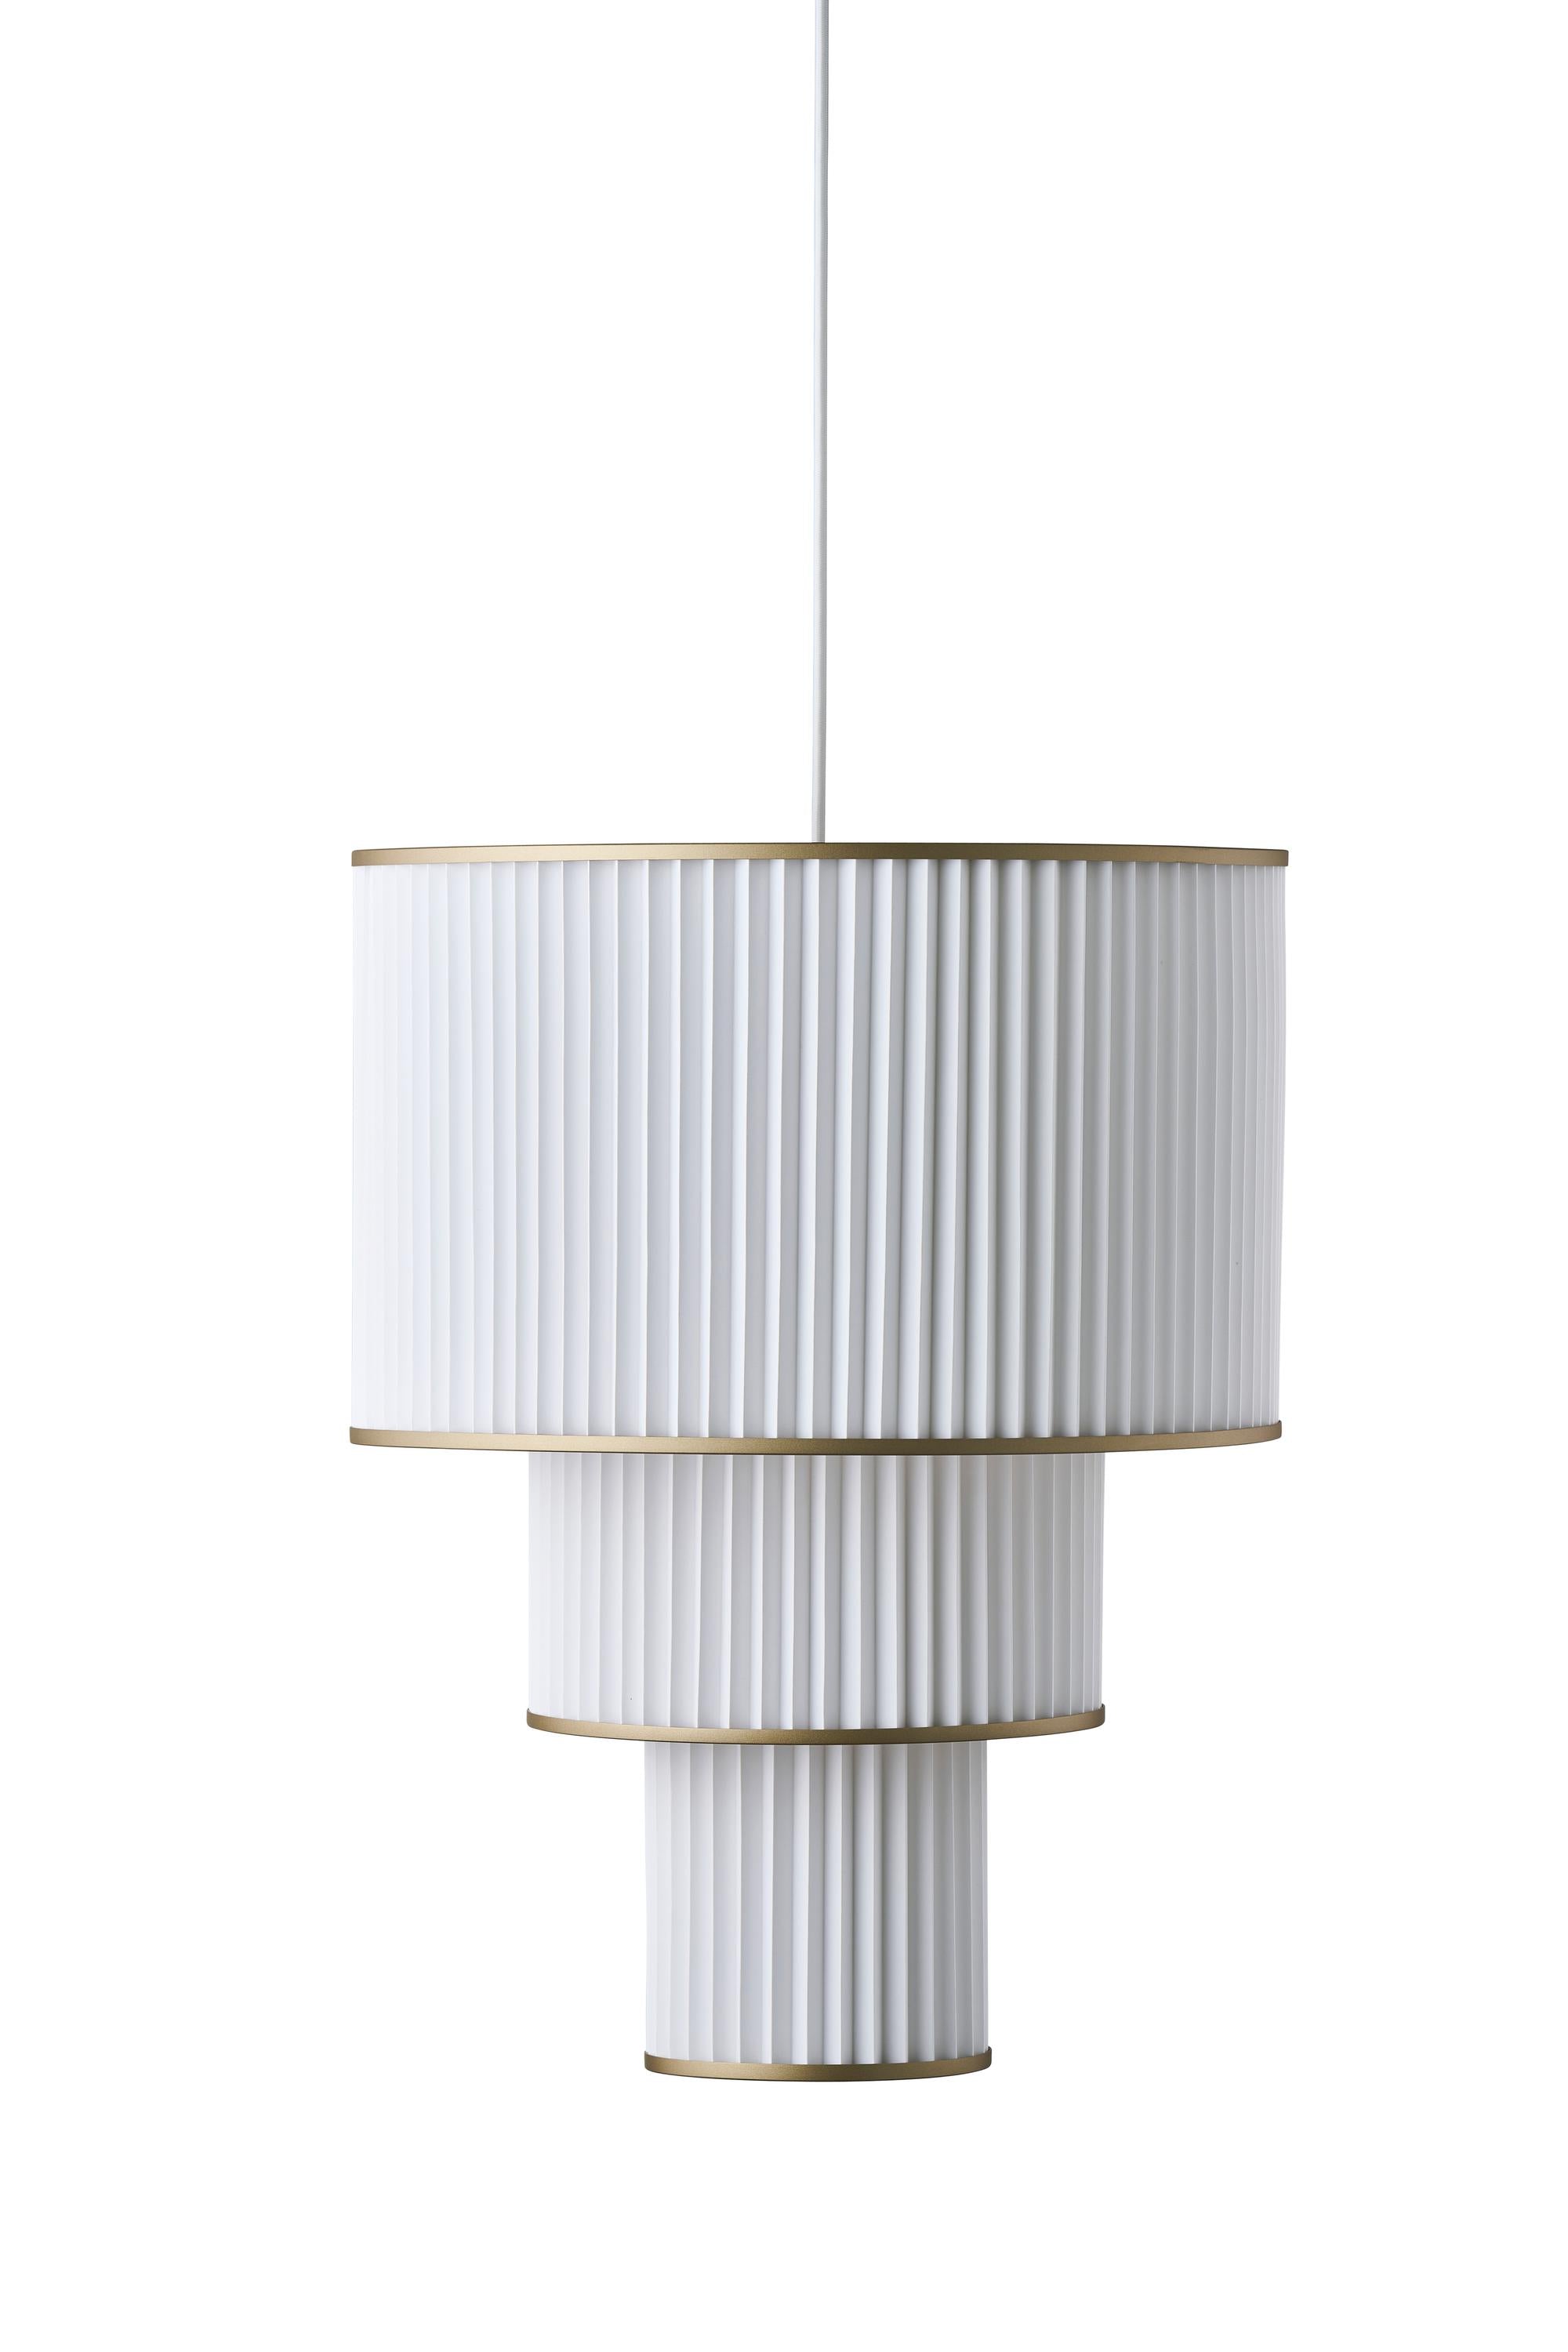 Le Klint Plivello Lámpara de suspensión dorada/blanca con 3 tonos (S M L)